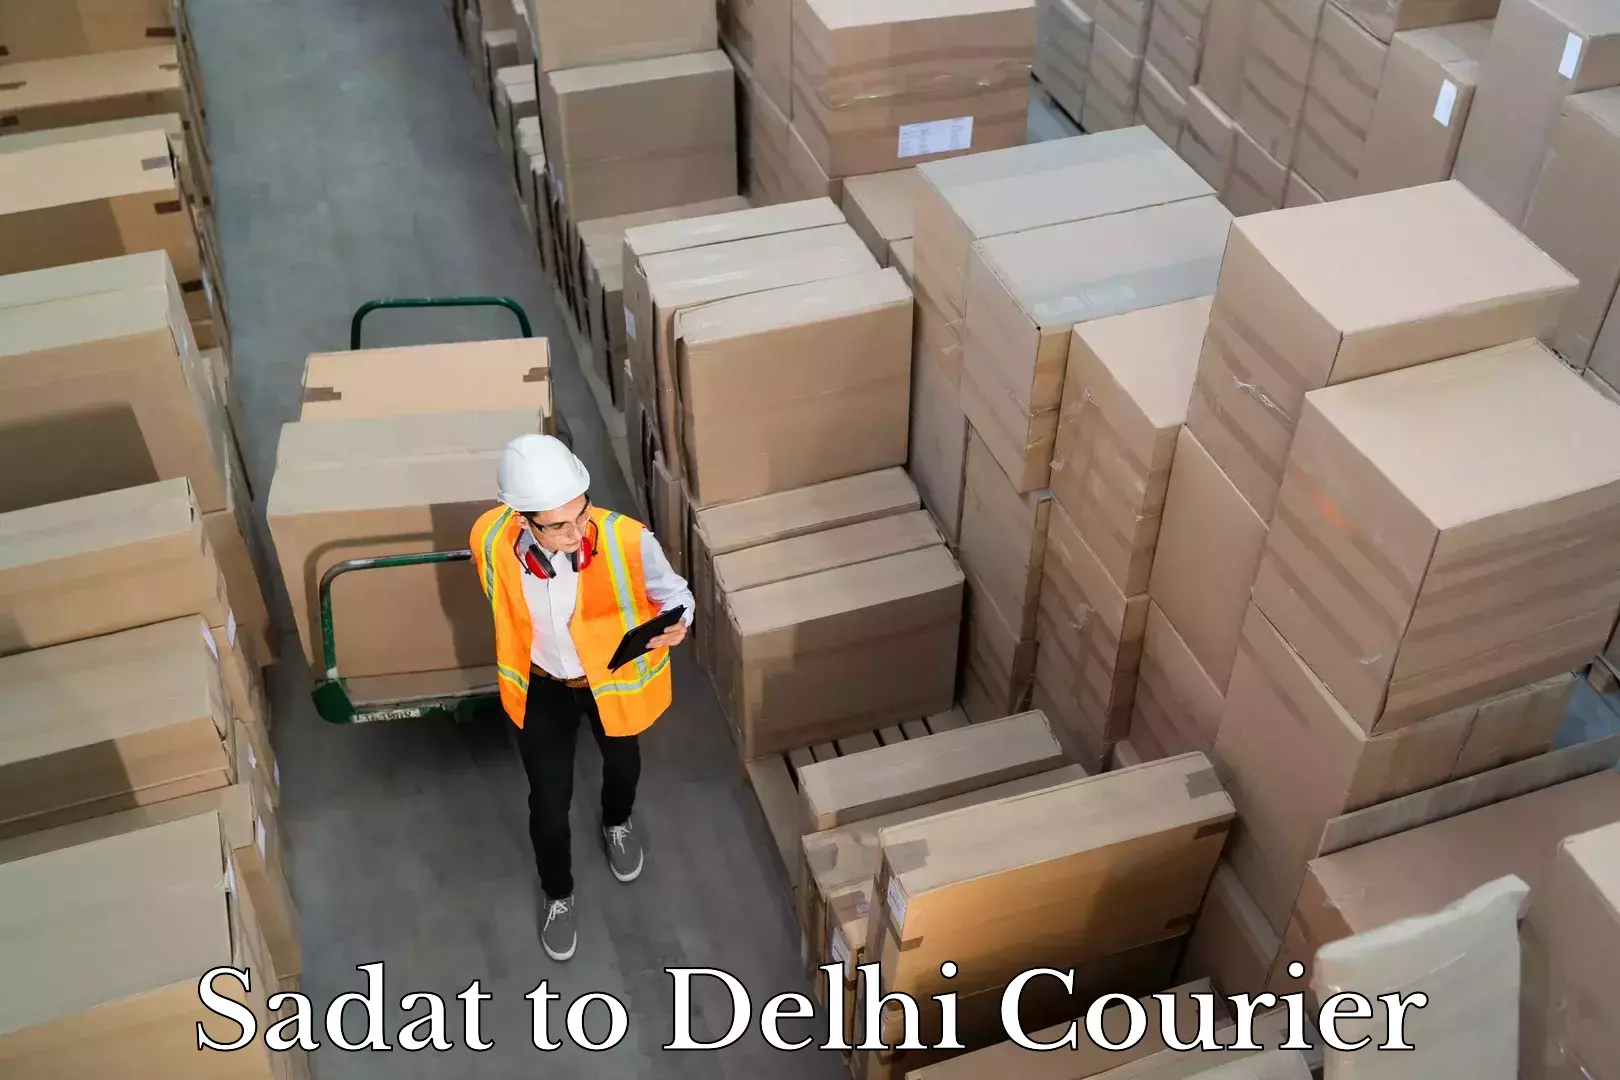 Global logistics network Sadat to Delhi